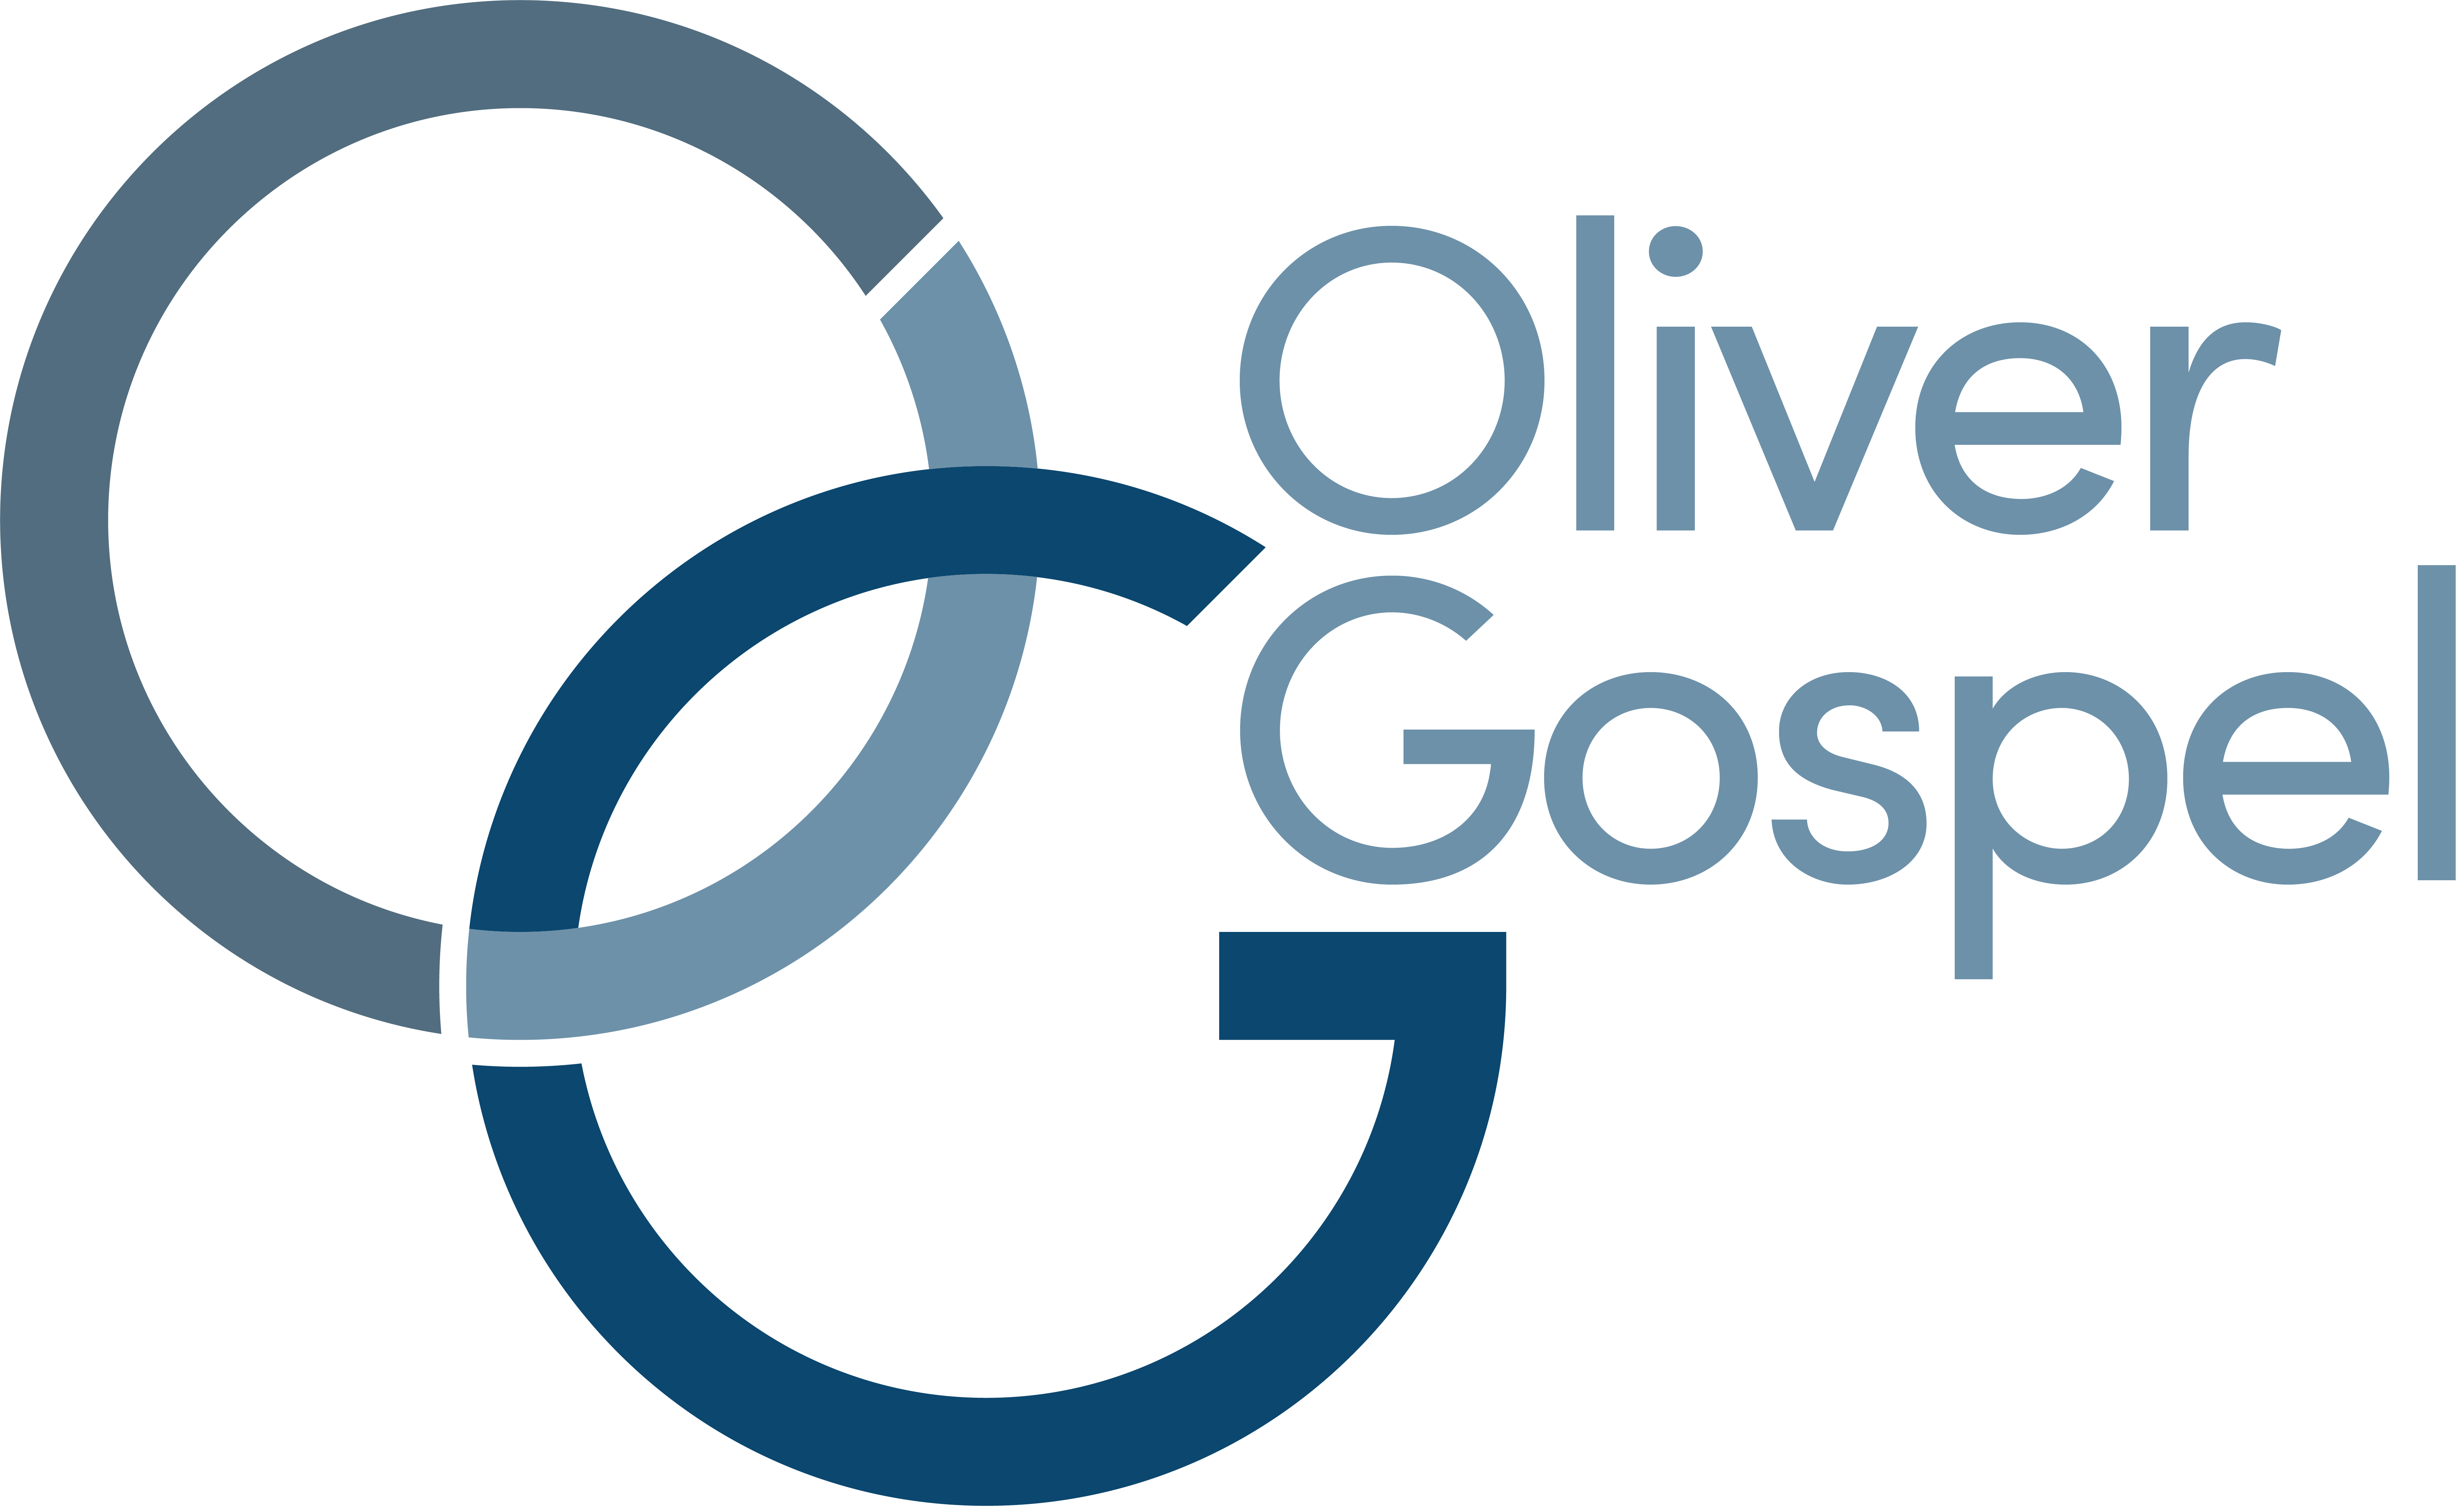 Oliver Gospel Mission